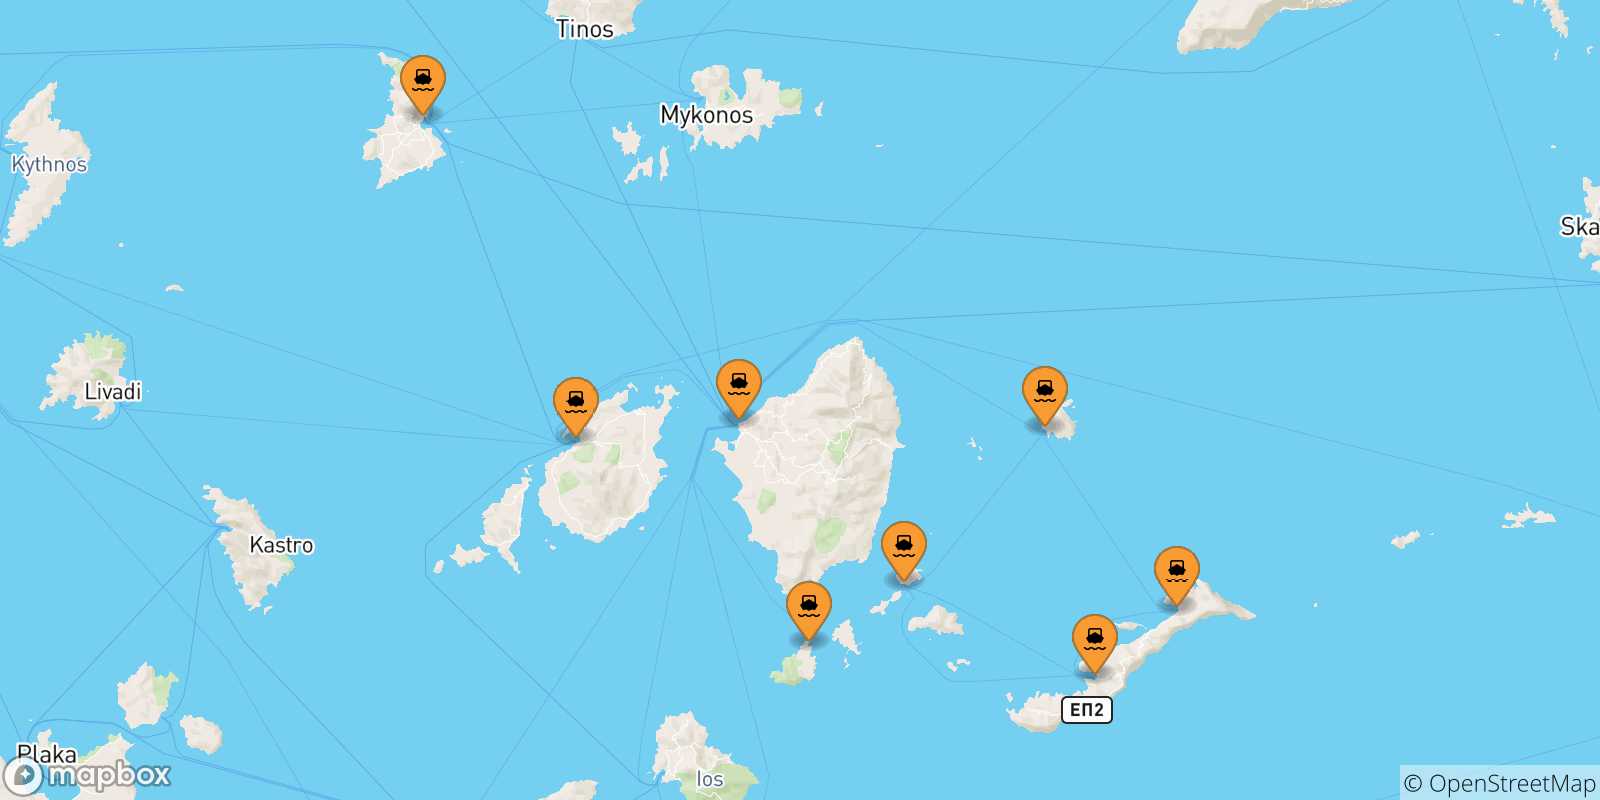 Mappa delle possibili rotte tra le Isole Cicladi e Schinoussa